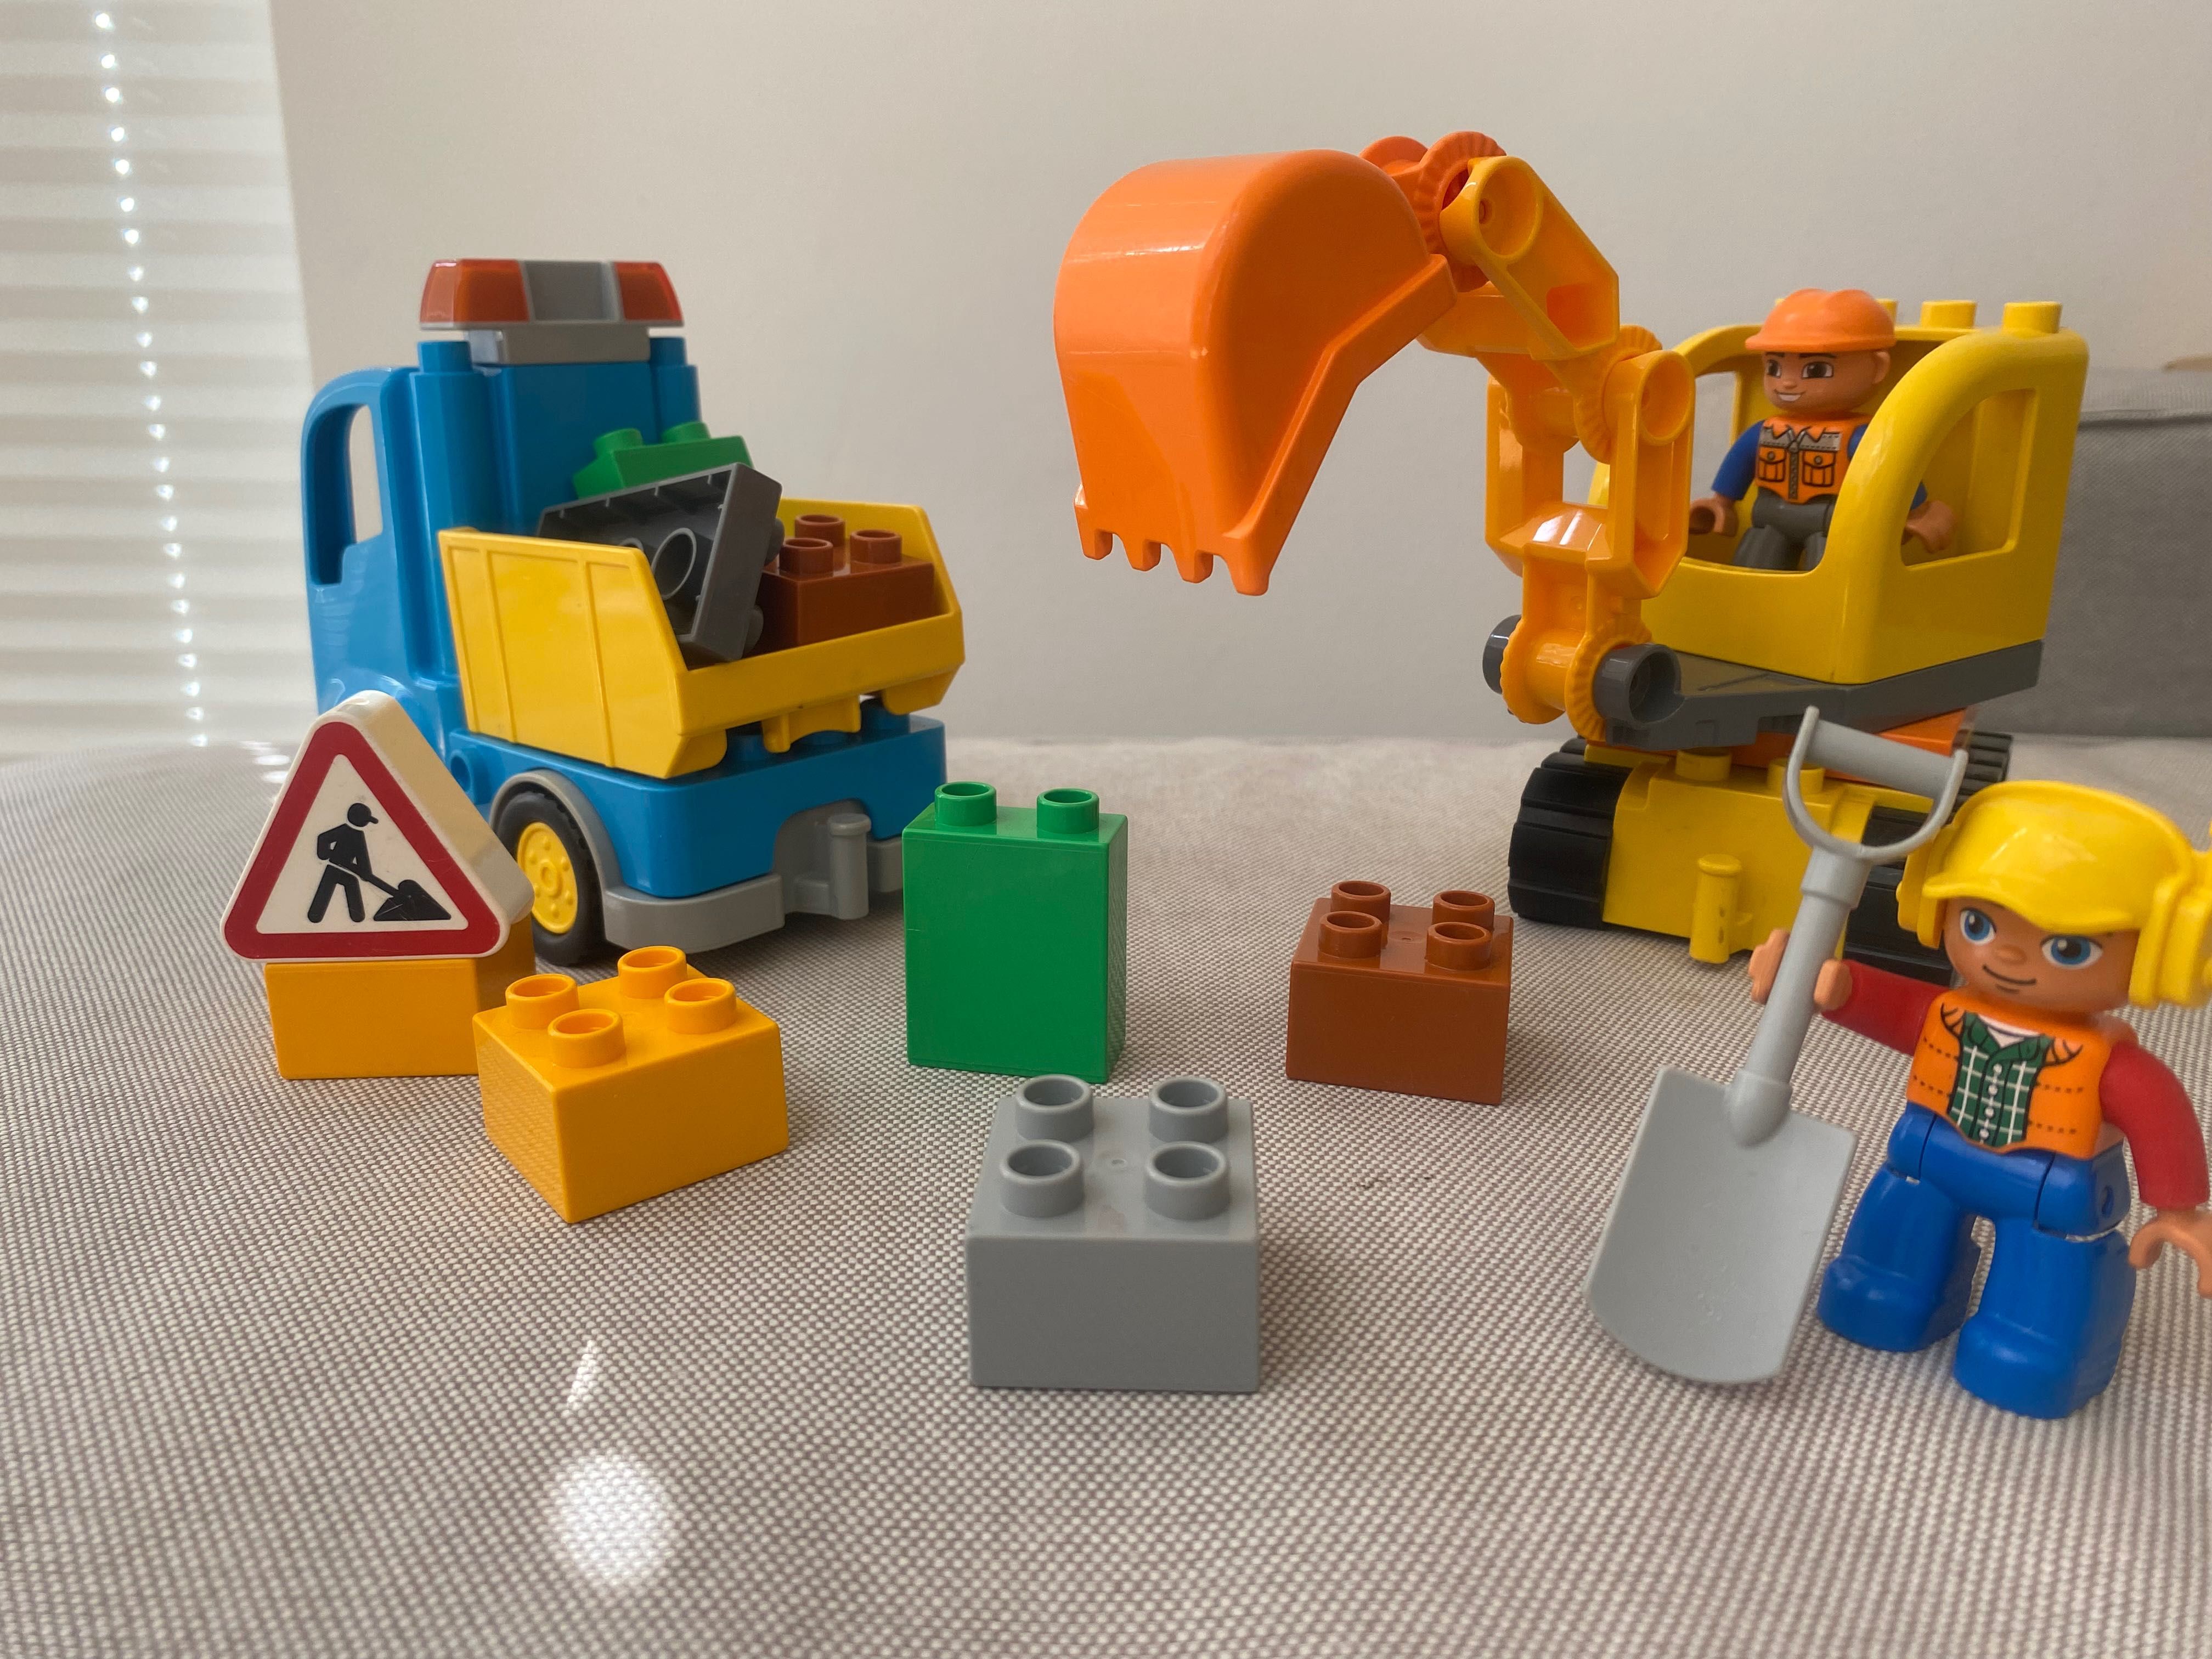 Lego Duplo 10812 Ciężarówka i koparka gąsienicowa. Zestaw kompletny!!!